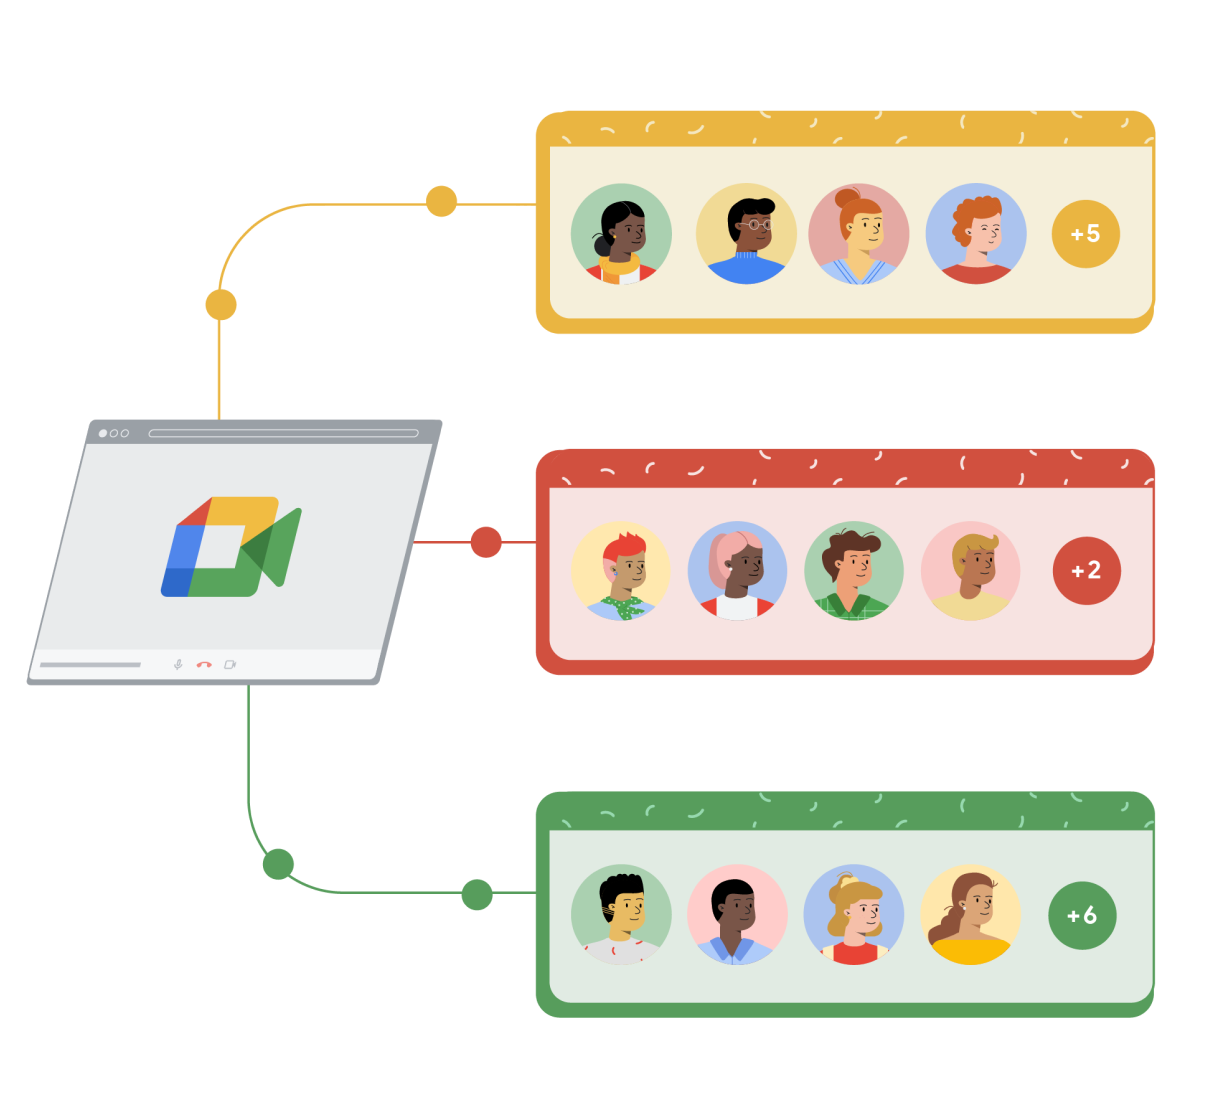 Een Google Meet-browservenster linkt naar 3 aparte rechthoeken die geel, rood en groen zijn. In elke rechthoek staan 4 mensen getekend in cirkels met rechts een 5e cirkel met een plus-teken en een getal om aan te geven dat er meer mensen deelnemen aan het Google Meet-gesprek.